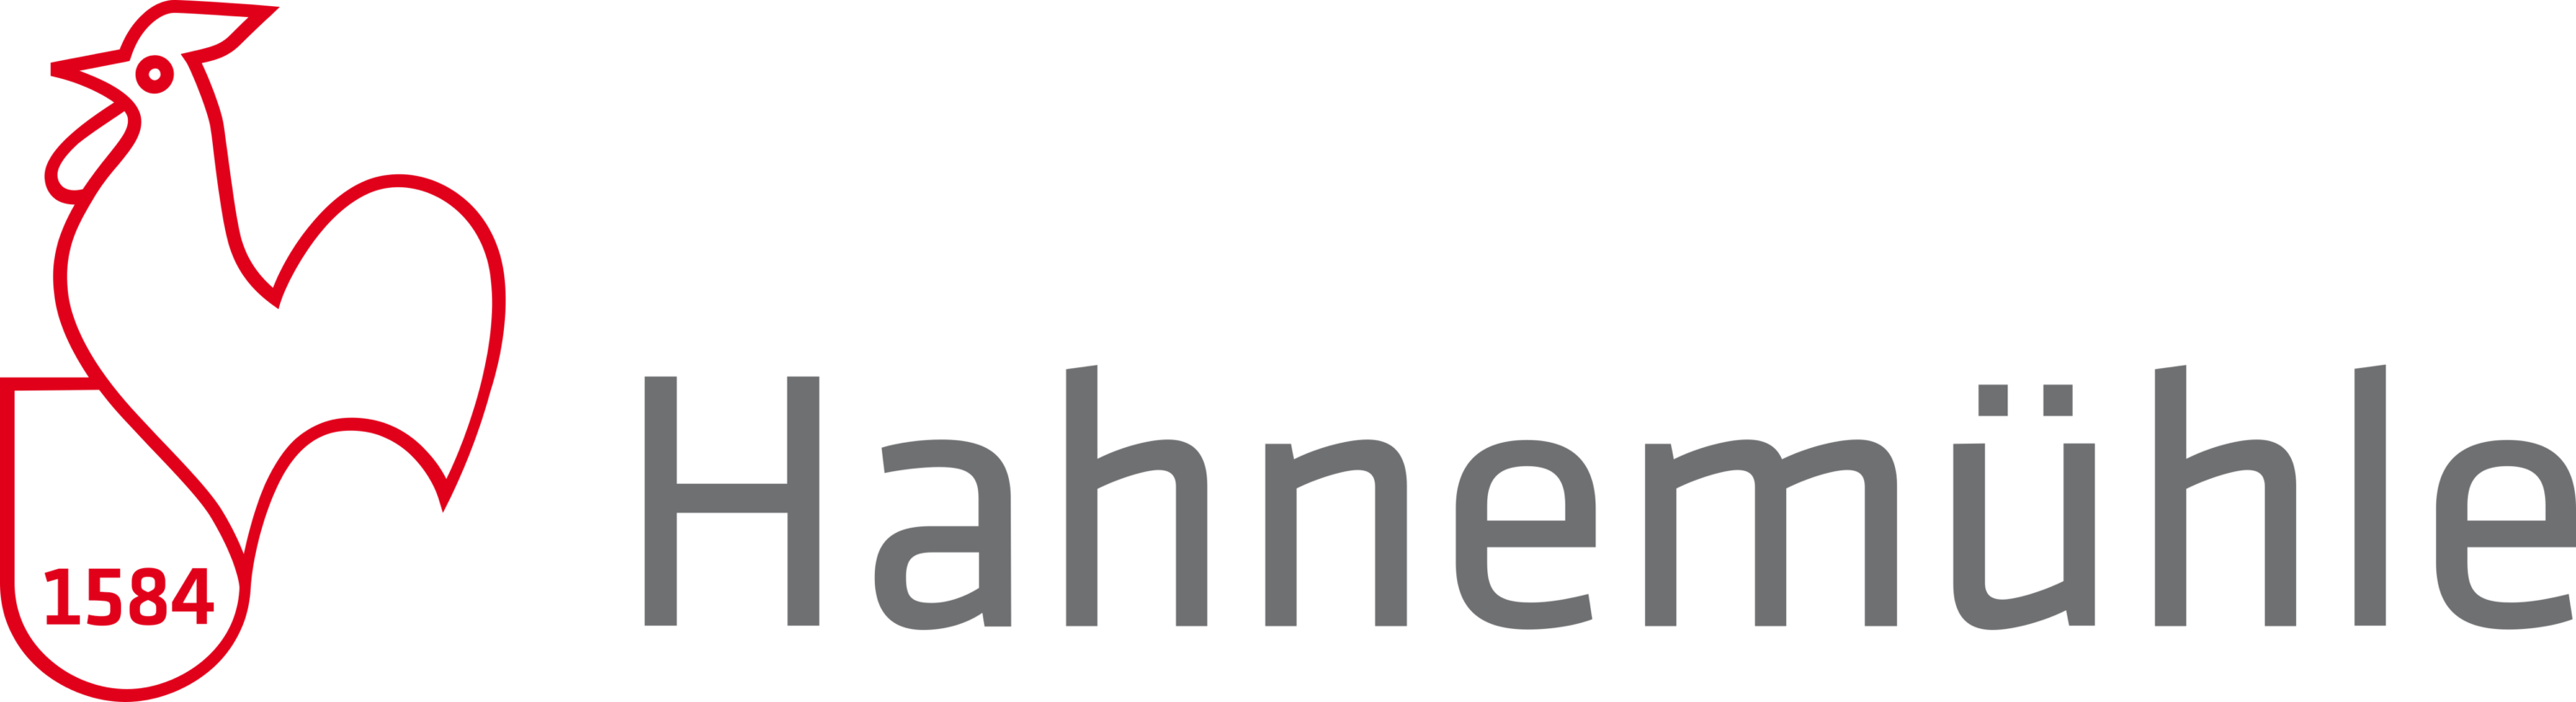 Hahnemuhle Logo